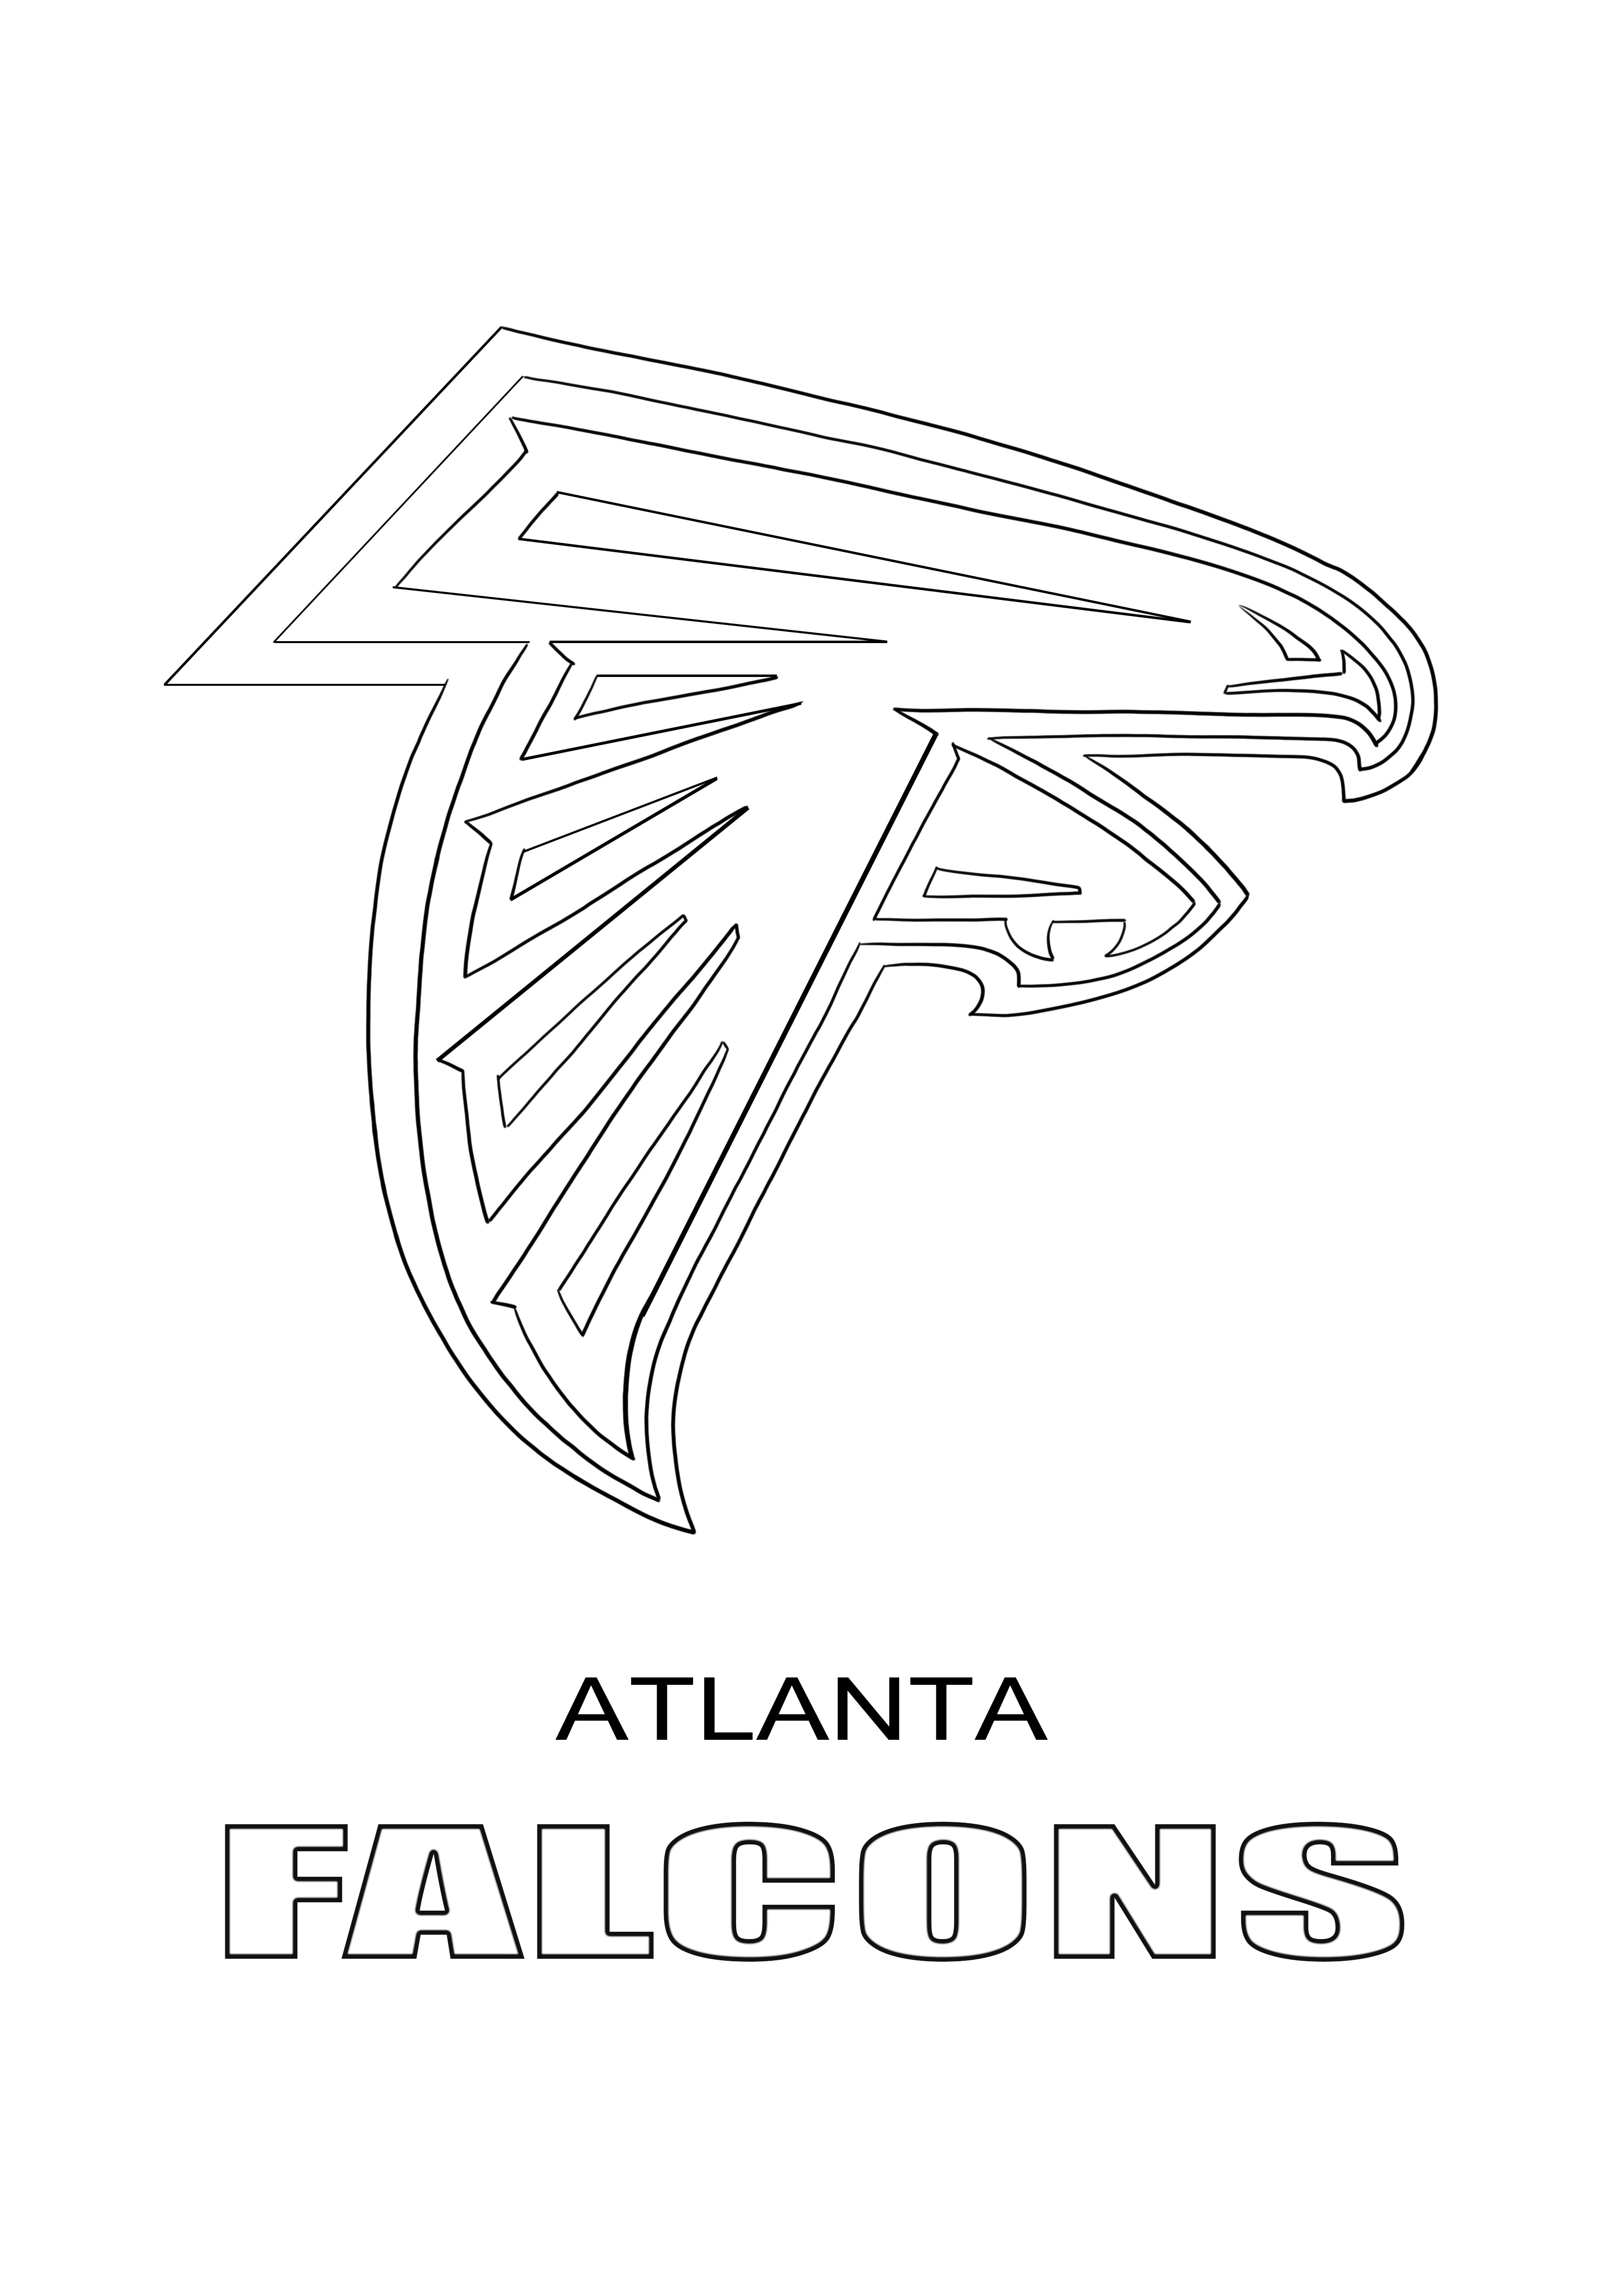 アトランタ・ファルコンズのロゴのカラーリングと無料ダウンロード